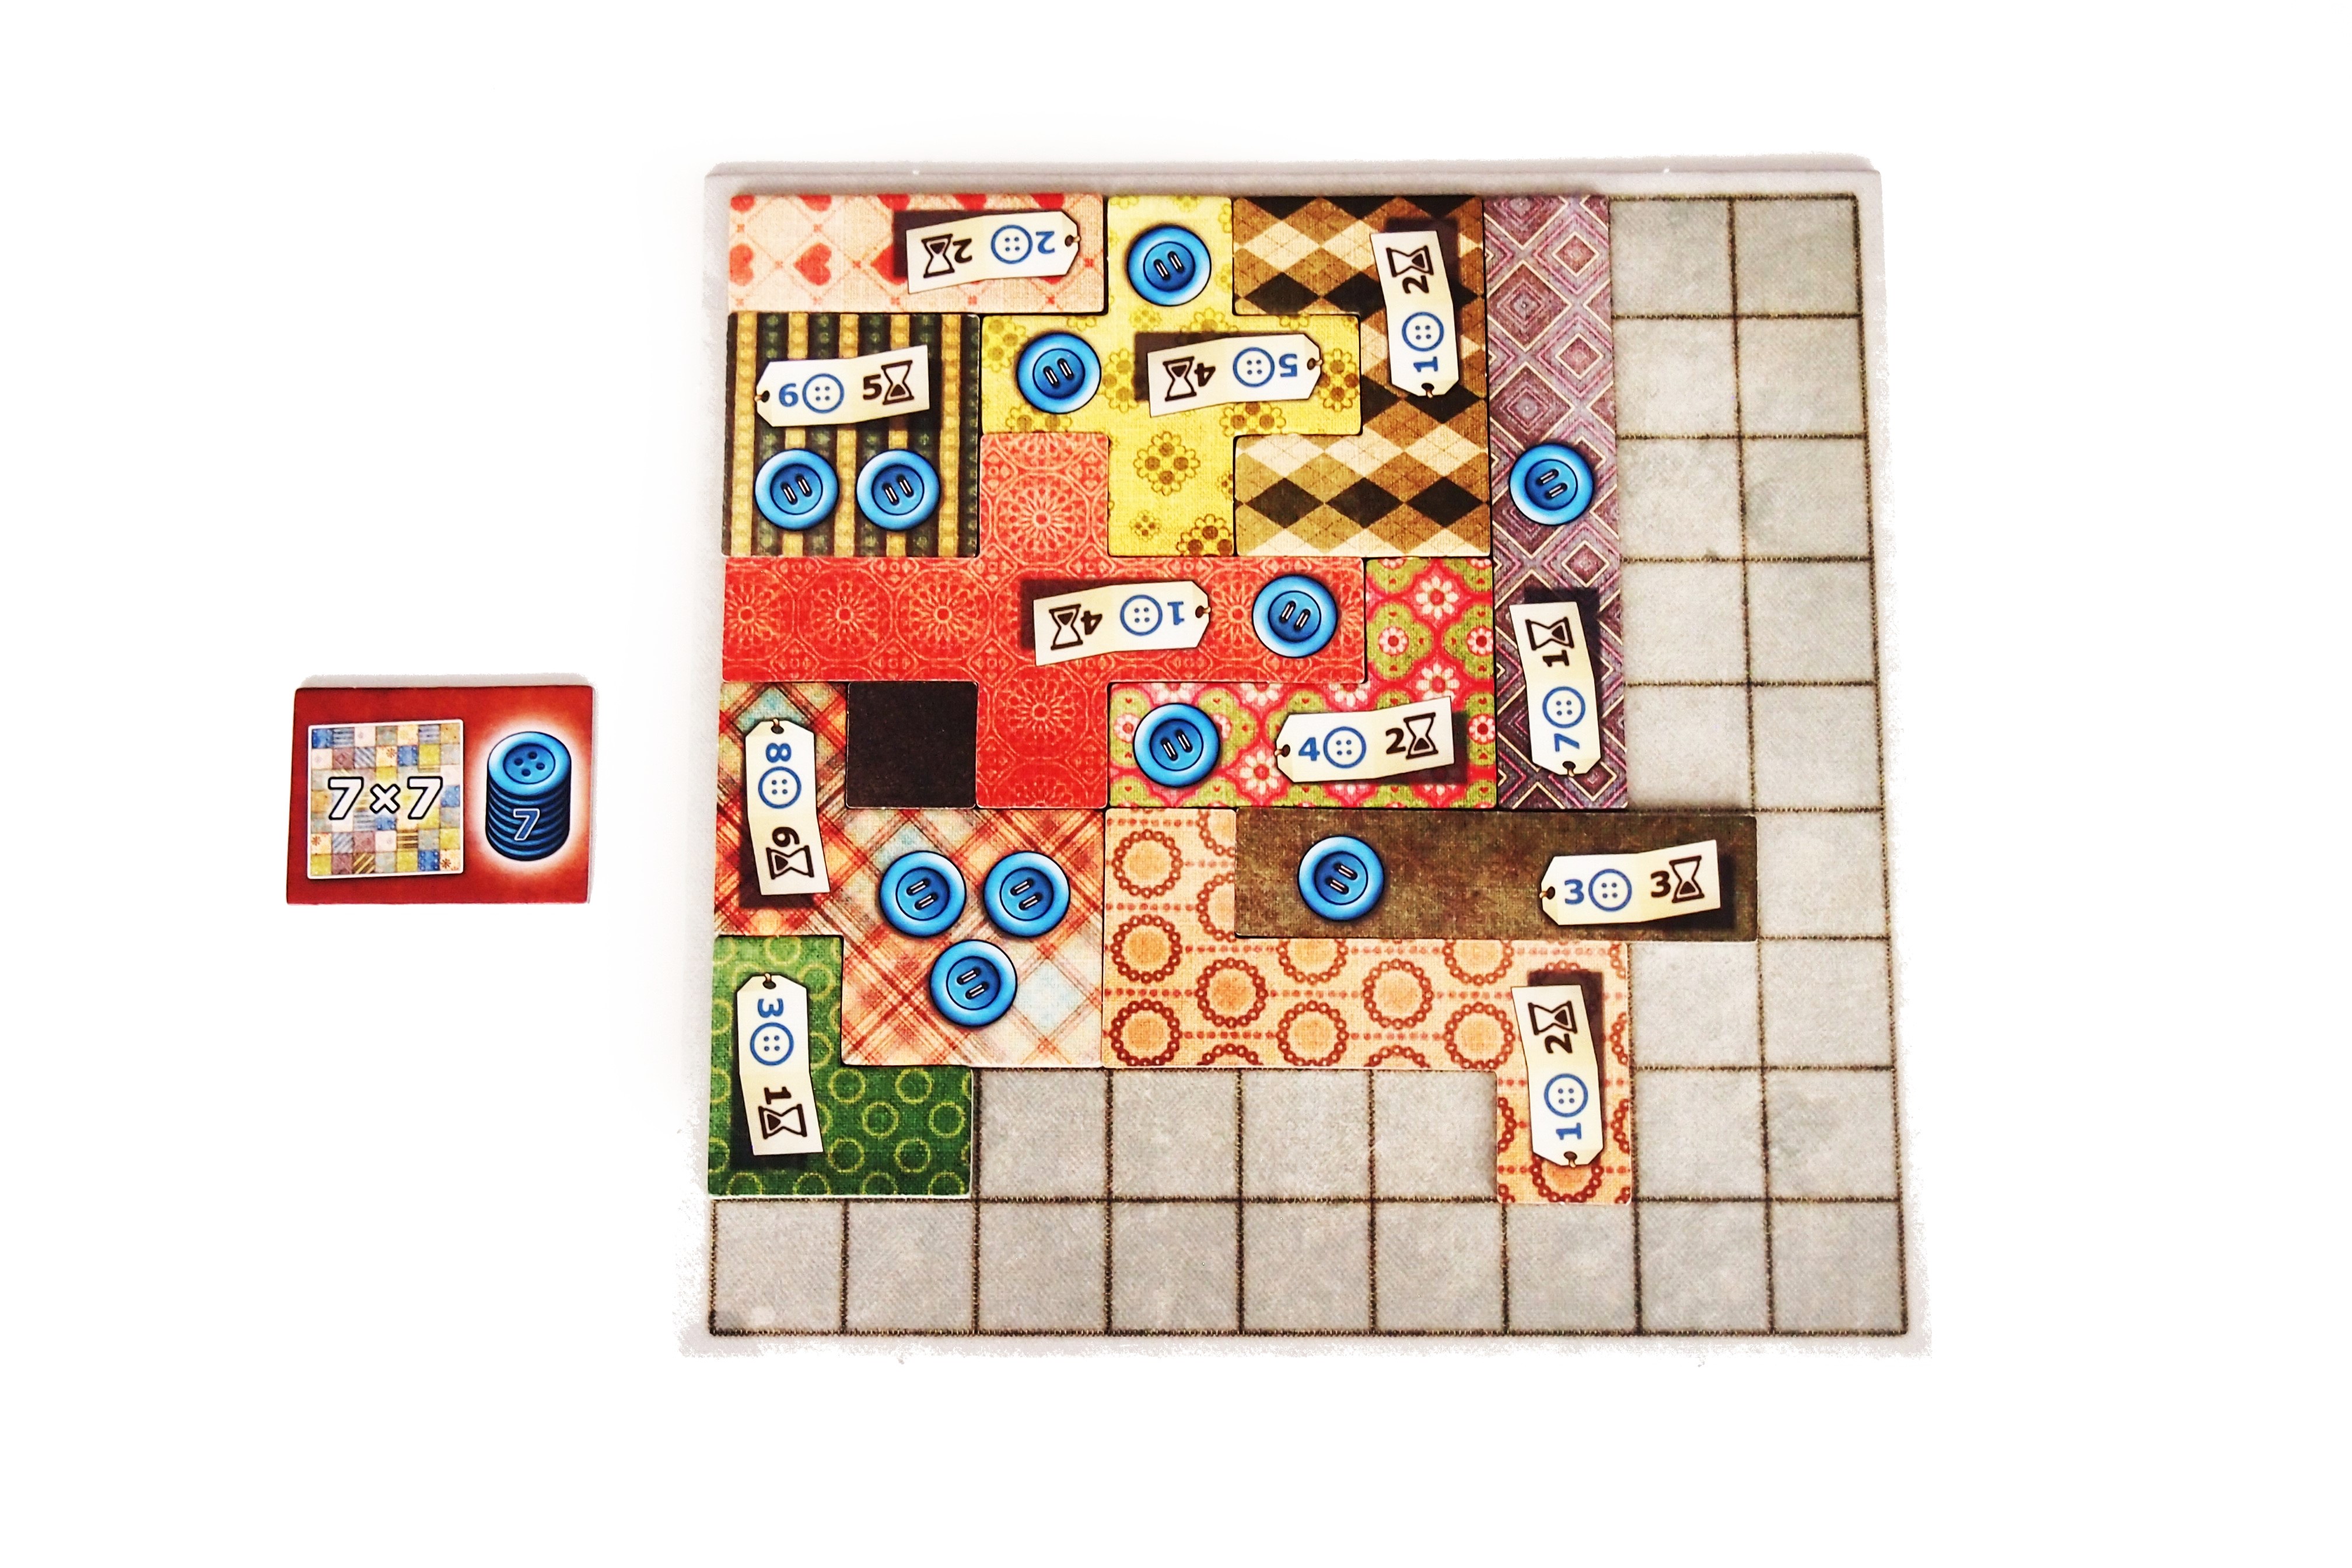 El primer jugador que complete un espacio de 7x7 obtendrá puntos adicionales al final de la partida. 